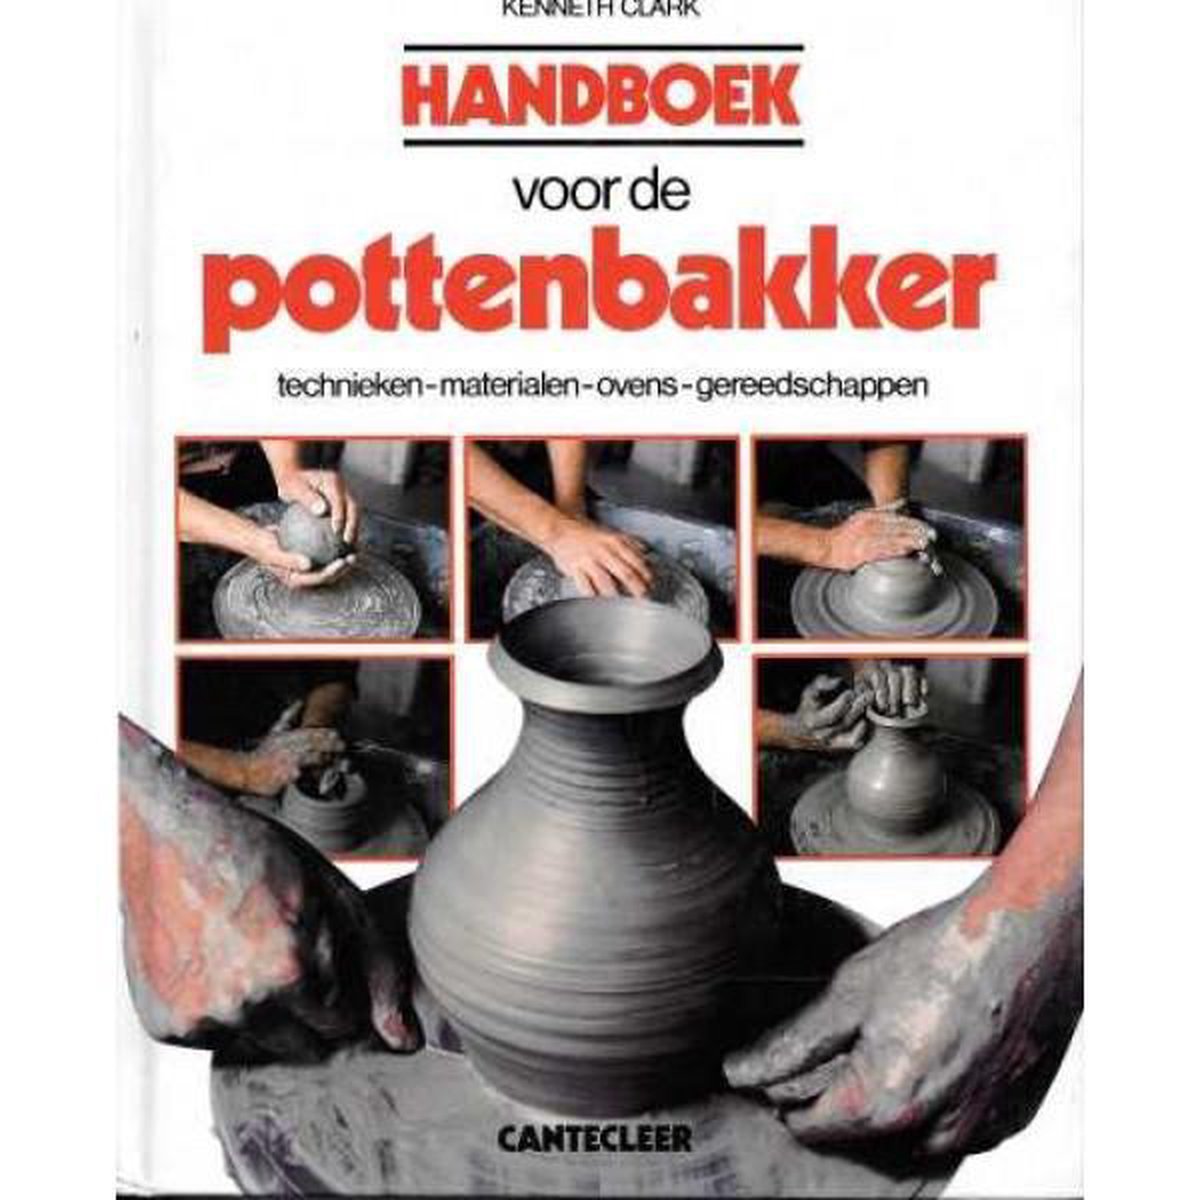 Handboek voor de pottenbakker / Cantecleer handboeken / dl. 27